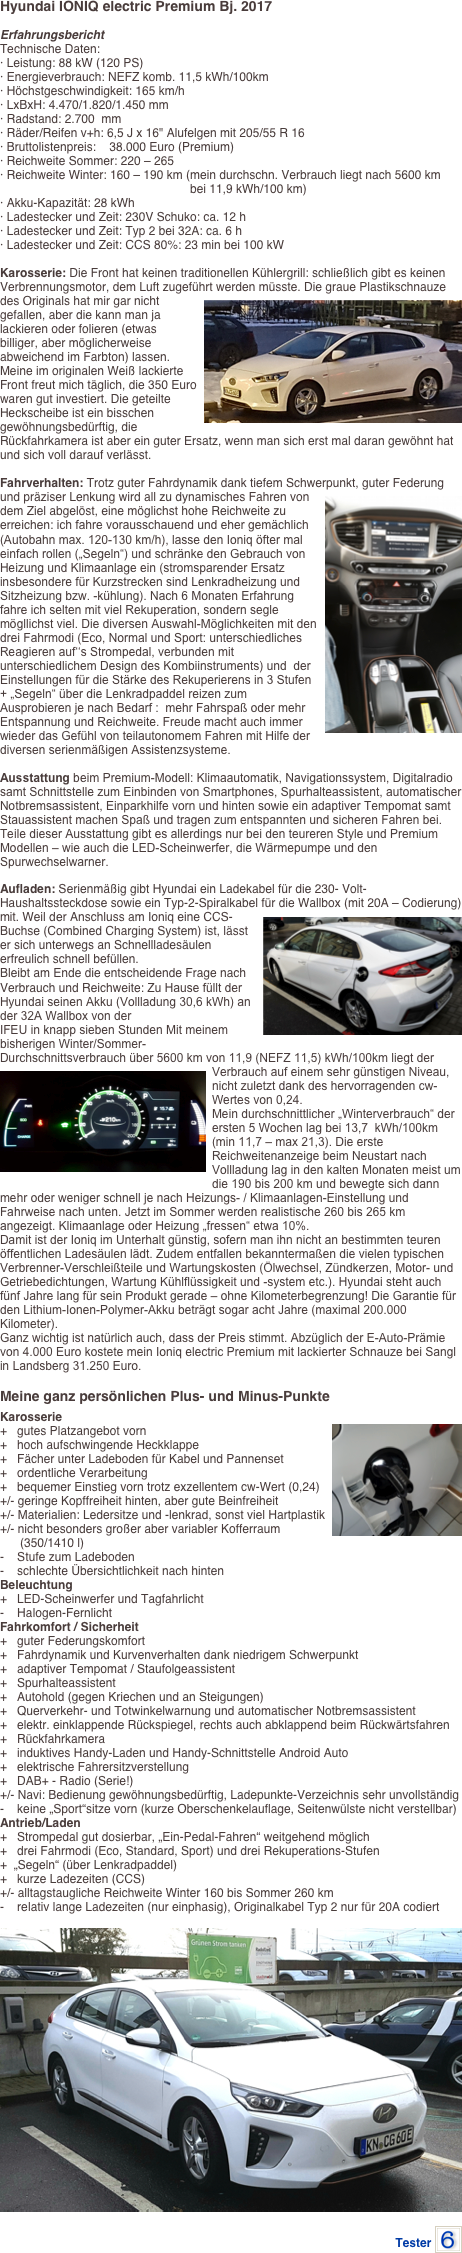 Hyundai IONIQ electric Premium Bj. 2017

Erfahrungsbericht
Technische Daten: · Leistung: 88 kW (120 PS) · Energieverbrauch: NEFZ komb. 11,5 kWh/100km · Höchstgeschwindigkeit: 165 km/h · LxBxH: 4.470/1.820/1.450 mm · Radstand: 2.700  mm · Räder/Reifen v+h: 6,5 J x 16" Alufelgen mit 205/55 R 16 · Bruttolistenpreis:    38.000 Euro (Premium) · Reichweite Sommer: 220 – 265 · Reichweite Winter: 160 – 190 km (mein durchschn. Verbrauch liegt nach 5600 km
                                                         bei 11,9 kWh/100 km) · Akku-Kapazität: 28 kWh · Ladestecker und Zeit: 230V Schuko: ca. 12 h · Ladestecker und Zeit: Typ 2 bei 32A: ca. 6 h · Ladestecker und Zeit: CCS 80%: 23 min bei 100 kW

Karosserie: Die Front hat keinen traditionellen Kühlergrill: schließlich gibt es keinen Verbrennungsmotor, dem Luft zugeführt ￼werden müsste. Die graue Plastikschnauze des Originals hat mir gar nicht gefallen, aber die kann man ja lackieren oder folieren (etwas billiger, aber möglicherweise abweichend im Farbton) lassen. Meine im originalen Weiß lackierte Front freut mich täglich, die 350 Euro waren gut investiert. Die geteilte Heckscheibe ist ein bisschen gewöhnungsbedürftig, die Rückfahrkamera ist aber ein guter Ersatz, wenn man sich erst mal daran gewöhnt hat und sich voll darauf verlässt.

Fahrverhalten: Trotz guter Fahrdynamik dank tiefem Schwerpunkt, guter Federung und präziser Lenkung wird all zu dynamisches Fahren￼ von dem Ziel abgelöst, eine möglichst hohe Reichweite zu erreichen: ich fahre vorausschauend und eher gemächlich (Autobahn max. 120-130 km/h), lasse den Ioniq öfter mal einfach rollen („Segeln“) und schränke den Gebrauch von Heizung und Klimaanlage ein (stromsparender Ersatz insbesondere für Kurzstrecken sind Lenkradheizung und Sitzheizung bzw. -kühlung). Nach 6 Monaten Erfahrung fahre ich selten mit viel Rekuperation, sondern segle mögllichst viel. Die diversen Auswahl-Möglichkeiten mit den drei Fahrmodi (Eco, Normal und Sport: unterschiedliches Reagieren auf‘‘s Strompedal, verbunden mit unterschiedlichem Design des Kombiinstruments) und  der Einstellungen für die Stärke des Rekuperierens in 3 Stufen + „Segeln“ über die Lenkradpaddel reizen zum Ausprobieren je nach Bedarf :  mehr Fahrspaß oder mehr Entspannung und Reichweite. Freude macht auch immer wieder das Gefühl von teilautonomem Fahren mit Hilfe der diversen serienmäßigen Assistenzsysteme.
 
Ausstattung beim Premium-Modell: Klimaautomatik, Navigationssystem, Digitalradio samt Schnittstelle zum Einbinden von Smartphones, Spurhalteassistent, automatischer Notbremsassistent, Einparkhilfe vorn und hinten sowie ein adaptiver Tempomat samt Stauassistent machen Spaß und tragen zum entspannten und sicheren Fahren bei. 
Teile dieser Ausstattung gibt es allerdings nur bei den teureren Style und Premium Modellen – wie auch die LED-Scheinwerfer, die Wärmepumpe und den Spurwechselwarner. 
Aufladen: Serienmäßig gibt Hyundai ein Ladekabel für die 230- Volt-Haushaltssteckdose sowie ein Typ-2-Spiralkabel für die Wallbox (mit 20A – Codierung) mit. Weil der Anschluss am Ioniq eine ￼CCS-Buchse (Combined Charging System) ist, lässt er sich unterwegs an Schnellladesäulen erfreulich schnell befüllen. Bleibt am Ende die entscheidende Frage nach Verbrauch und Reichweite: Zu Hause füllt der Hyundai seinen Akku (Vollladung 30,6 kWh) an der 32A Wallbox von der 
IFEU in knapp sieben Stunden Mit meinem bisherigen Winter/Sommer- Durchschnittsverbrauch über 5600 km von 11,9 (NEFZ 11,5) kWh/100km liegt der ￼Verbrauch auf einem sehr günstigen Niveau, nicht zuletzt dank des hervorragenden cw-Wertes von 0,24. 
Mein durchschnittlicher „Winterverbrauch“ der ersten 5 Wochen lag bei 13,7  kWh/100km (min 11,7 – max 21,3). Die erste Reichweitenanzeige beim Neustart nach Vollladung lag in den kalten Monaten meist um die 190 bis 200 km und bewegte sich dann mehr oder weniger schnell je nach Heizungs- / Klimaanlagen-Einstellung und Fahrweise nach unten. Jetzt im Sommer werden realistische 260 bis 265 km angezeigt. Klimaanlage oder Heizung „fressen“ etwa 10%.Damit ist der Ioniq im Unterhalt günstig, sofern man ihn nicht an bestimmten teuren 
öffentlichen Ladesäulen lädt. Zudem entfallen bekanntermaßen die vielen typischen Verbrenner-Verschleißteile und Wartungskosten (Ölwechsel, Zündkerzen, Motor- und Getriebedichtungen, Wartung Kühlflüssigkeit und -system etc.). Hyundai steht auch fünf Jahre lang für sein Produkt gerade – ohne Kilometerbegrenzung! Die Garantie für den Lithium-Ionen-Polymer-Akku beträgt sogar acht Jahre (maximal 200.000 Kilometer). 
Ganz wichtig ist natürlich auch, dass der Preis stimmt. Abzüglich der E-Auto-Prämie von 4.000 Euro kostete mein Ioniq electric Premium mit lackierter Schnauze bei Sangl  in Landsberg 31.250 Euro.

Meine ganz persönlichen Plus- und Minus-Punkte
Karosserie+   gutes Platzangebot vorn ￼+   hoch aufschwingende Heckklappe +   Fächer unter Ladeboden für Kabel und Pannenset +   ordentliche Verarbeitung +   bequemer Einstieg vorn trotz exzellentem cw-Wert (0,24) +/- geringe Kopffreiheit hinten, aber gute Beinfreiheit +/- Materialien: Ledersitze und -lenkrad, sonst viel Hartplastik +/- nicht besonders großer aber variabler Kofferraum
      (350/1410 l) -    Stufe zum Ladeboden -    schlechte Übersichtlichkeit nach hinten Beleuchtung+   LED-Scheinwerfer und Tagfahrlicht -    Halogen-Fernlicht Fahrkomfort / Sicherheit+   guter Federungskomfort +   Fahrdynamik und Kurvenverhalten dank niedrigem Schwerpunkt +   adaptiver Tempomat / Staufolgeassistent +   Spurhalteassistent +   Autohold (gegen Kriechen und an Steigungen) +   Querverkehr- und Totwinkelwarnung und automatischer Notbremsassistent +   elektr. einklappende Rückspiegel, rechts auch abklappend beim Rückwärtsfahren +   Rückfahrkamera +   induktives Handy-Laden und Handy-Schnittstelle Android Auto +   elektrische Fahrersitzverstellung +   DAB+ - Radio (Serie!) +/- Navi: Bedienung gewöhnungsbedürftig, Ladepunkte-Verzeichnis sehr unvollständig-    keine „Sport“sitze vorn (kurze Oberschenkelauflage, Seitenwülste nicht verstellbar) Antrieb/Laden+   Strompedal gut dosierbar, „Ein-Pedal-Fahren“ weitgehend möglich +   drei Fahrmodi (Eco, Standard, Sport) und drei Rekuperations-Stufen
+  „Segeln“ (über Lenkradpaddel) +   kurze Ladezeiten (CCS) +/- alltagstaugliche Reichweite Winter 160 bis Sommer 260 km -    relativ lange Ladezeiten (nur einphasig), Originalkabel Typ 2 nur für 20A codiert

￼

Tester ￼